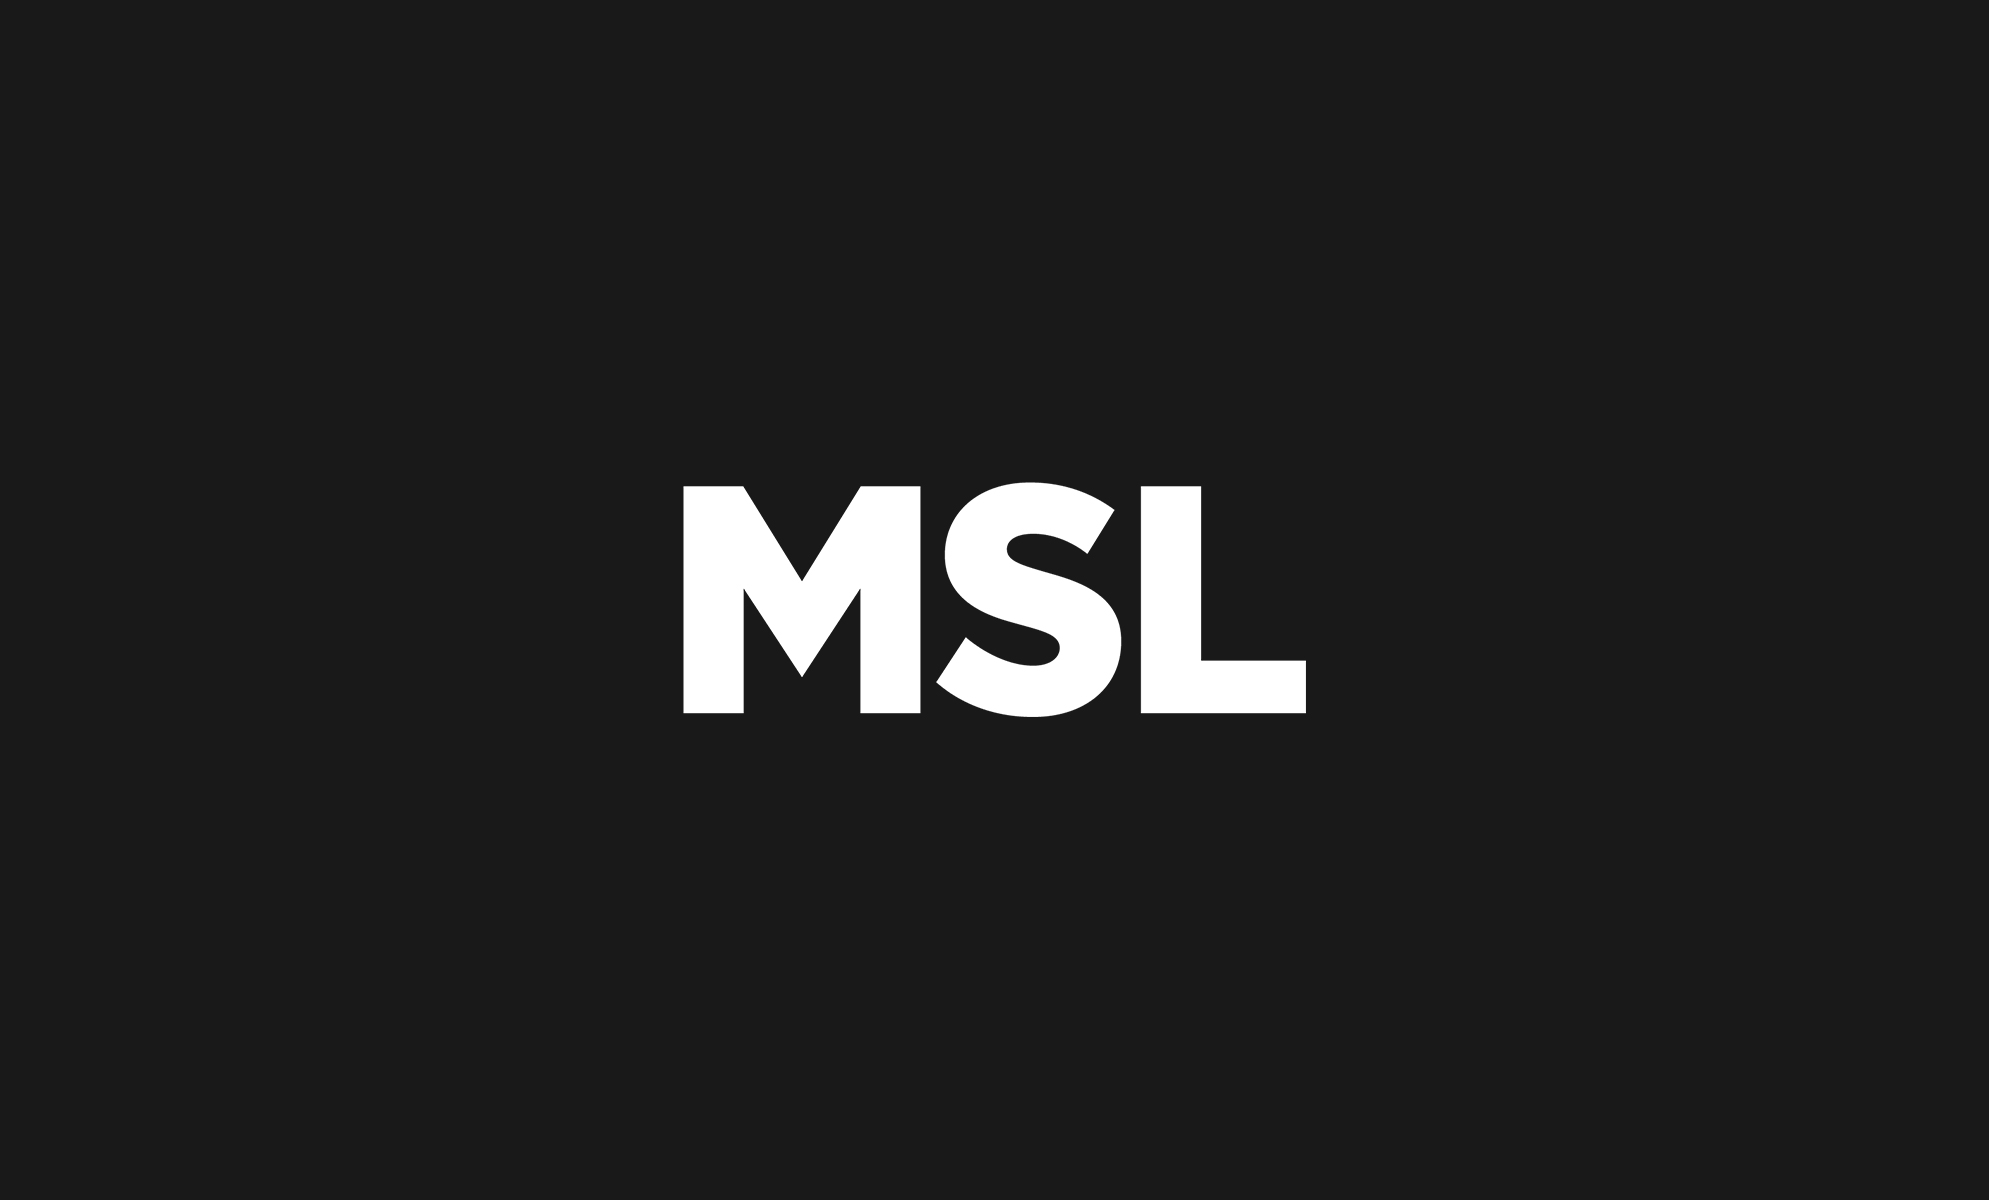 white msl logo on black background